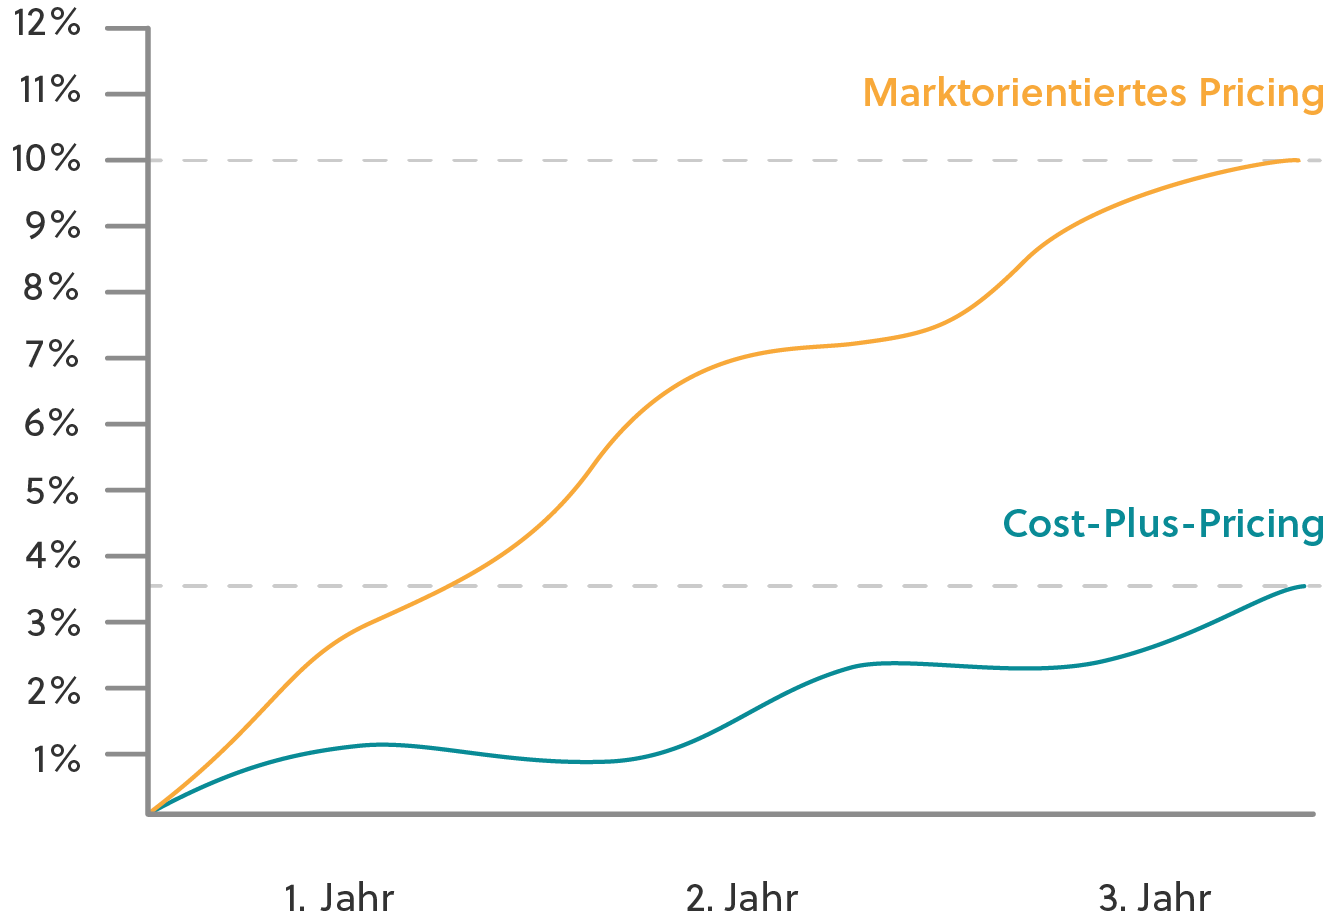 Marktorientiertes Pricing vs. Cost-Plus Pricing